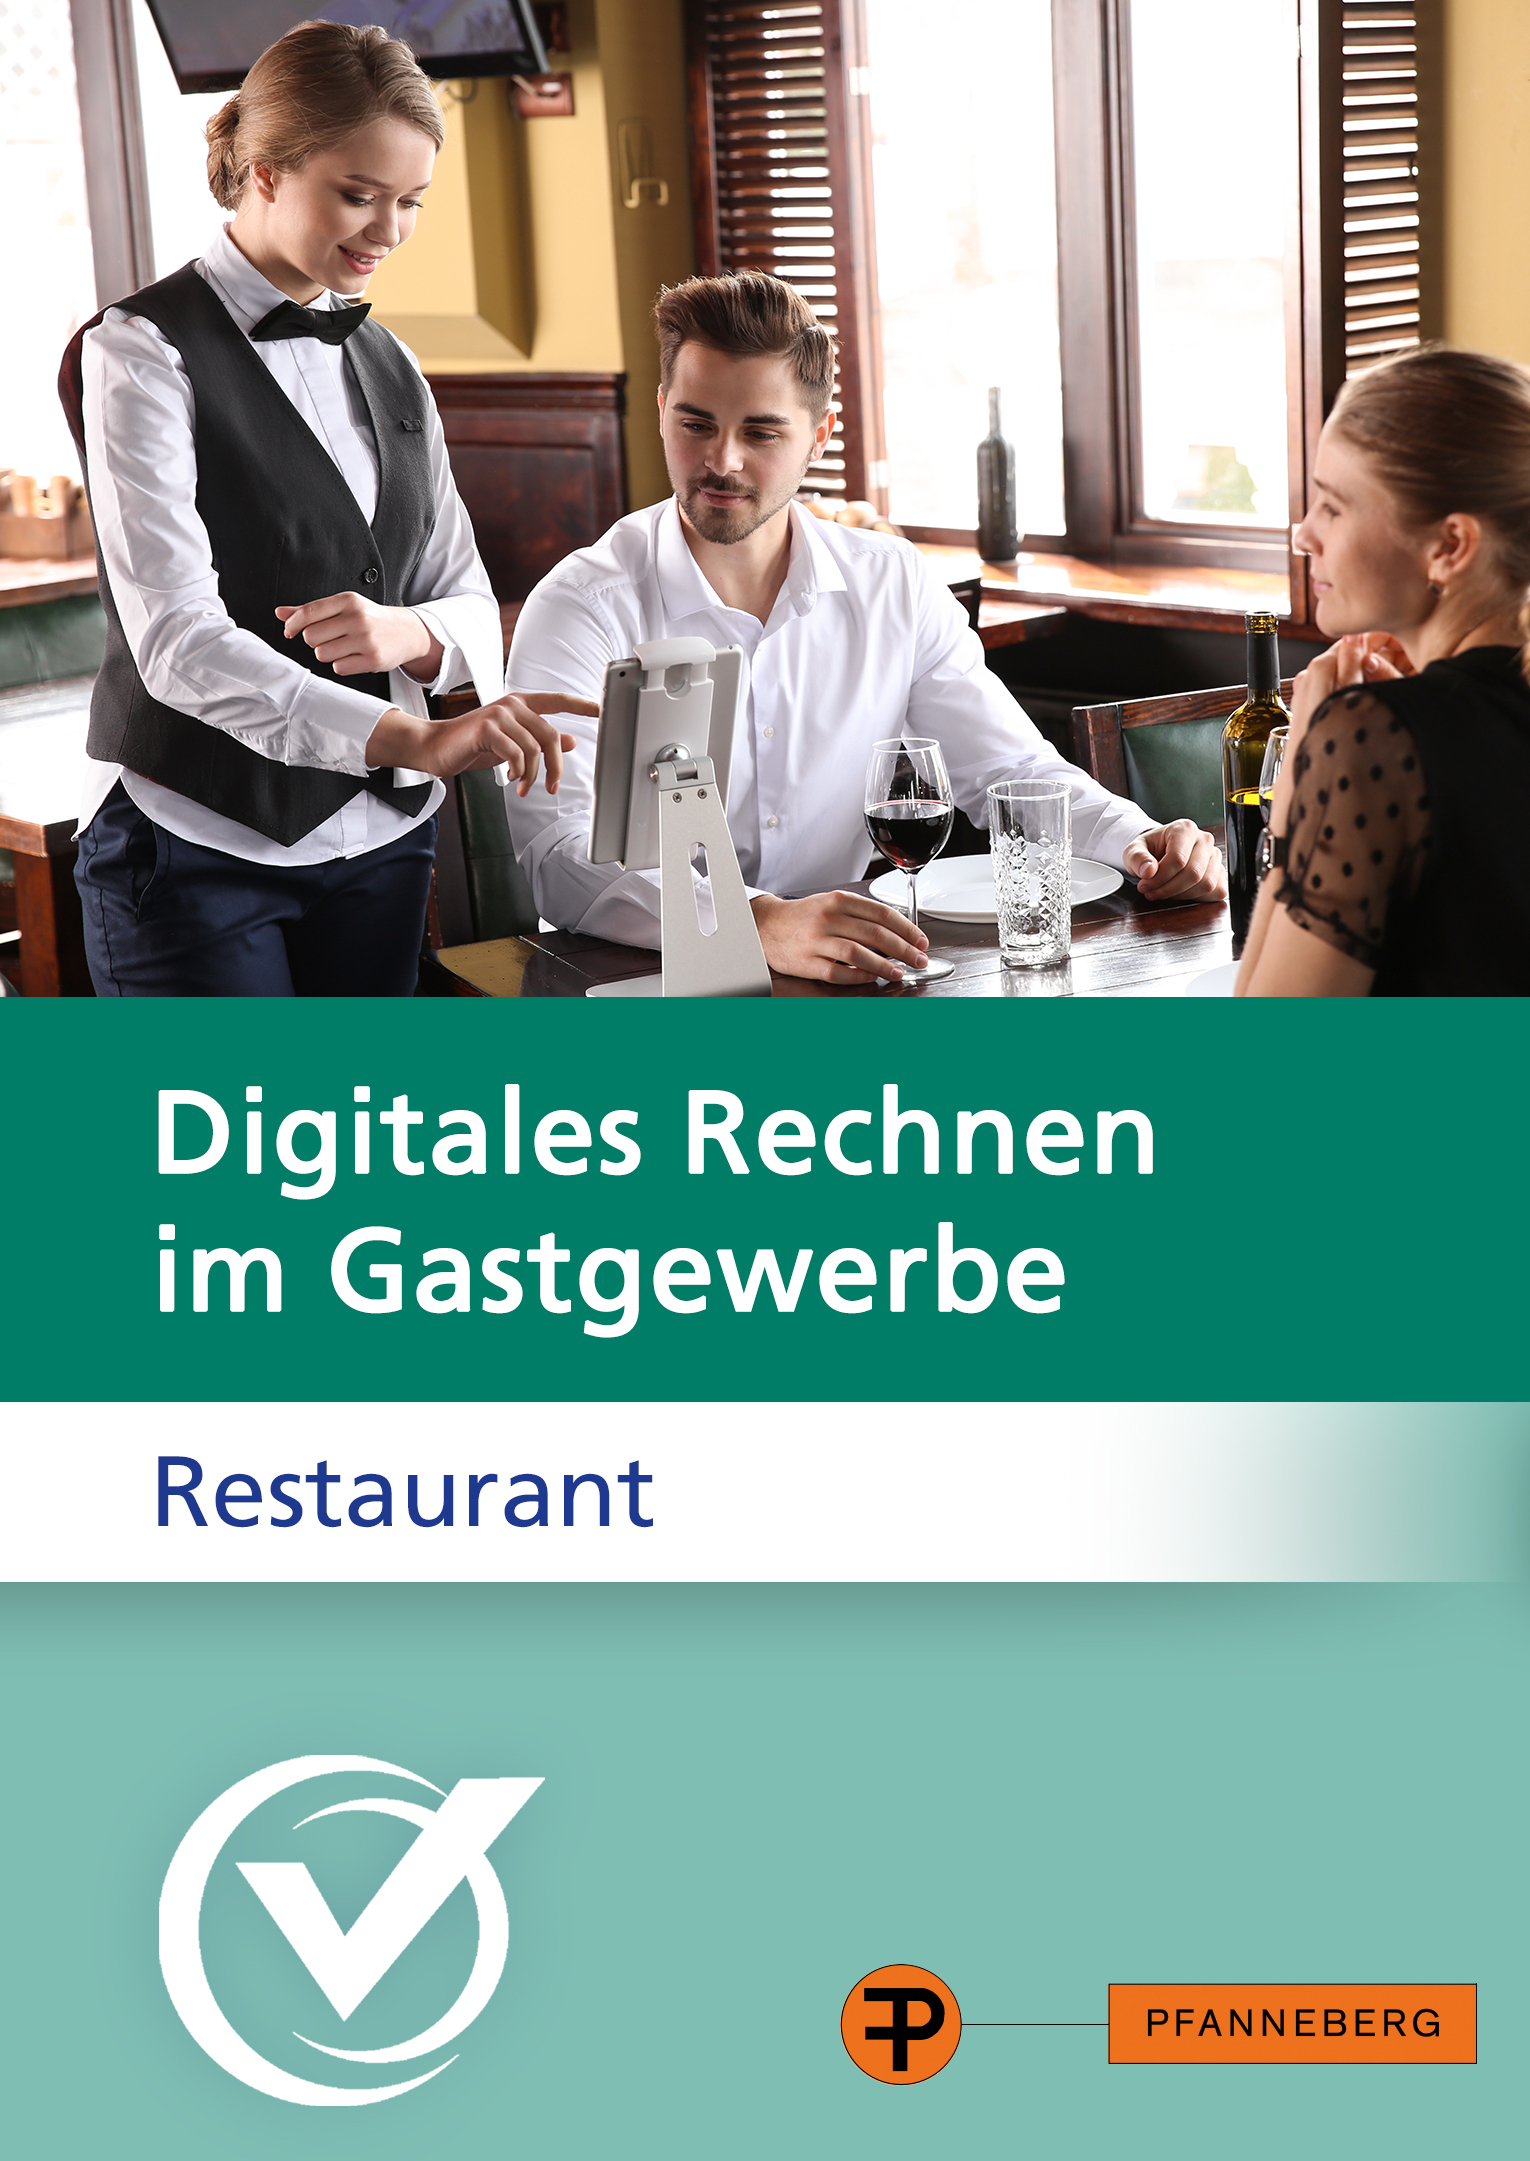 Digitales Rechnen im Gastgewerbe - Restaurant